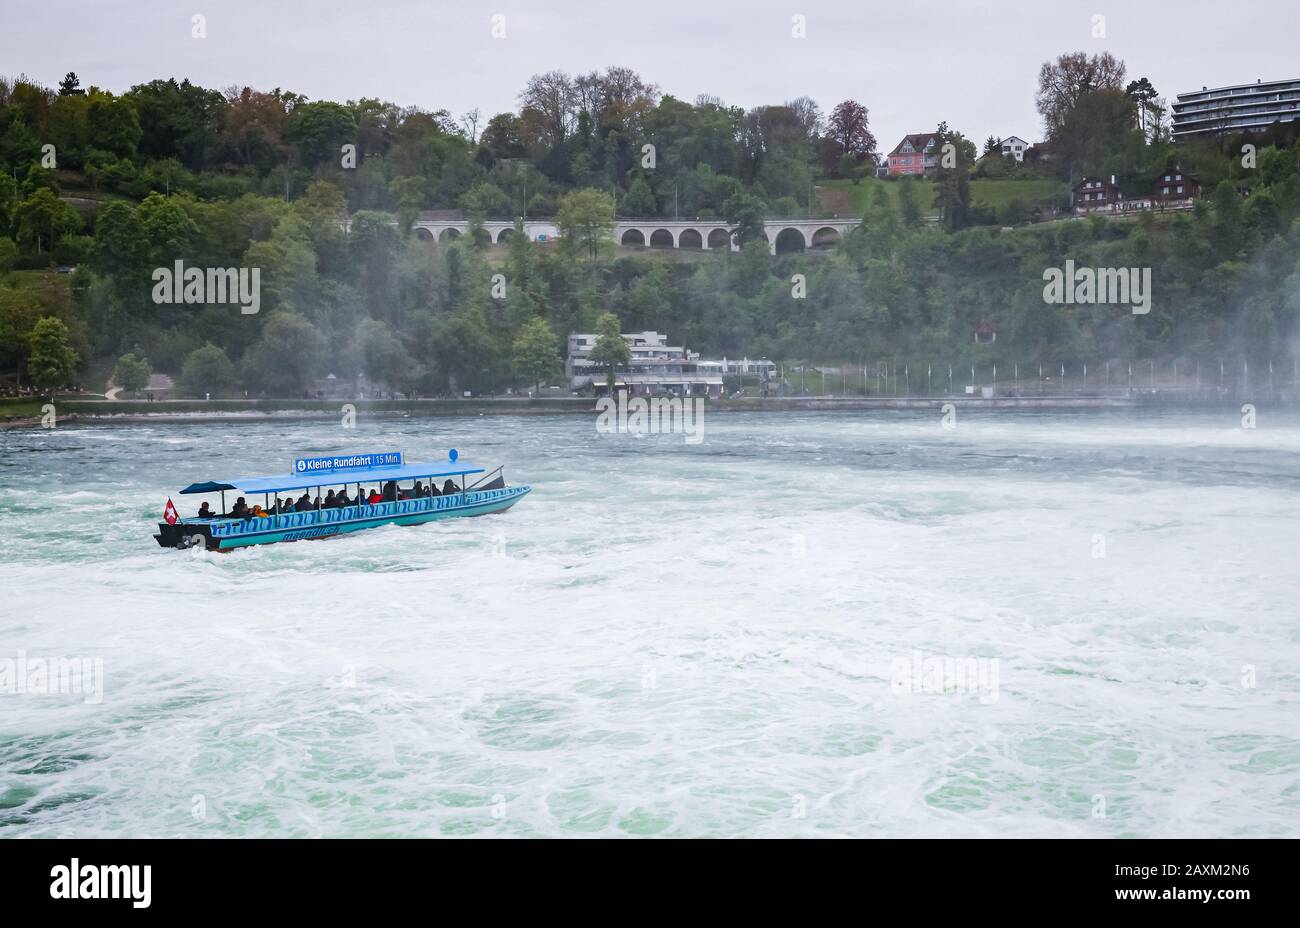 Cascate del Reno, Svizzera - 6 maggio 2017: Gita in barca alle cascate del Reno, i turisti sono in motoscafo blu sulle acque in difficoltà Foto Stock